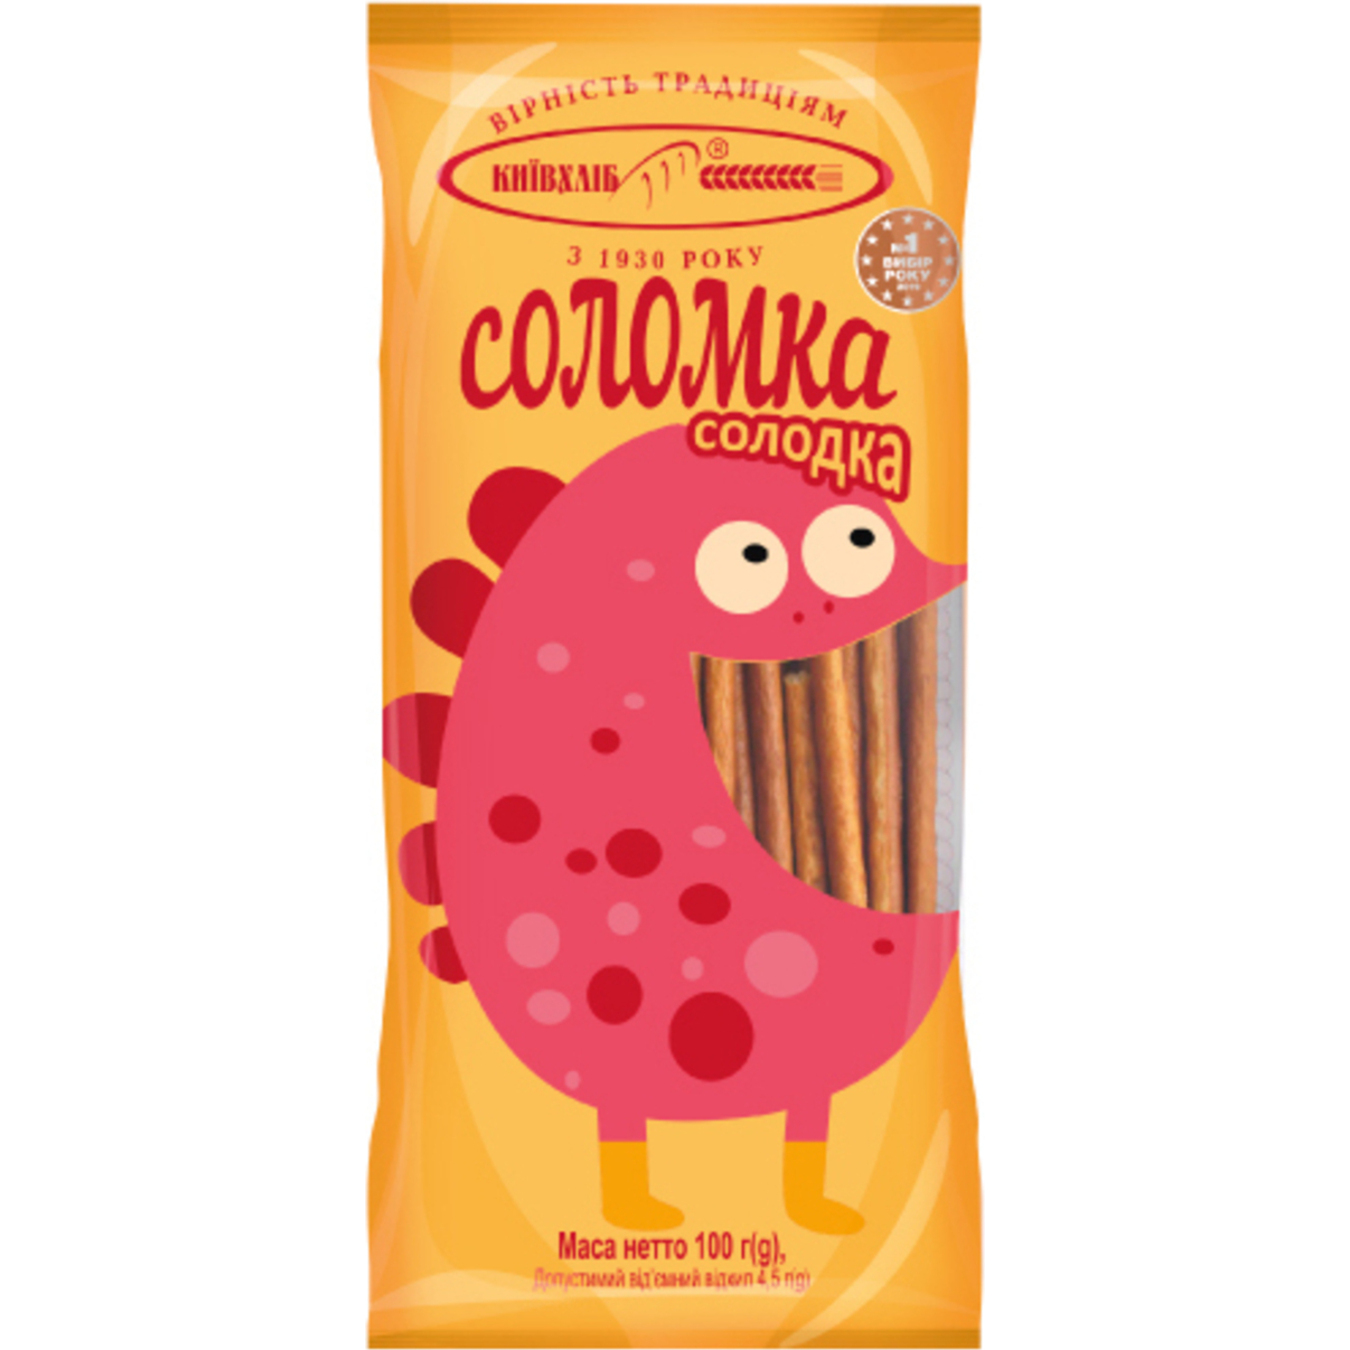 Kyivkhlib sweet stick 100g